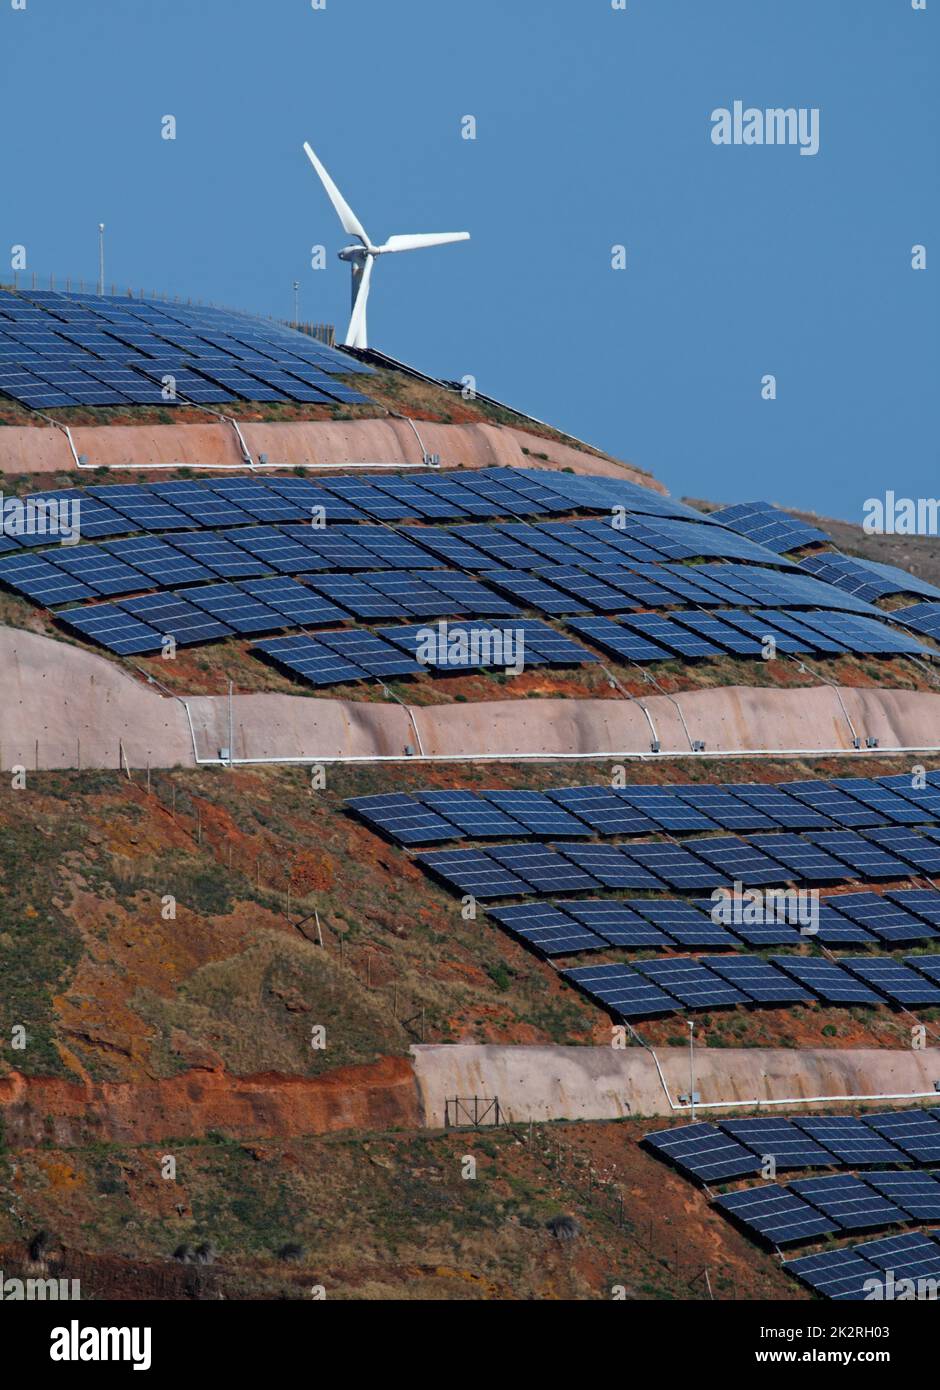 Photovoltaik-Sonnenkollektoren und Windturbinen, die Strom auf einem Hügel und blauem Himmel erzeugen. Ökologie grün Natur Konzept. Stockfoto